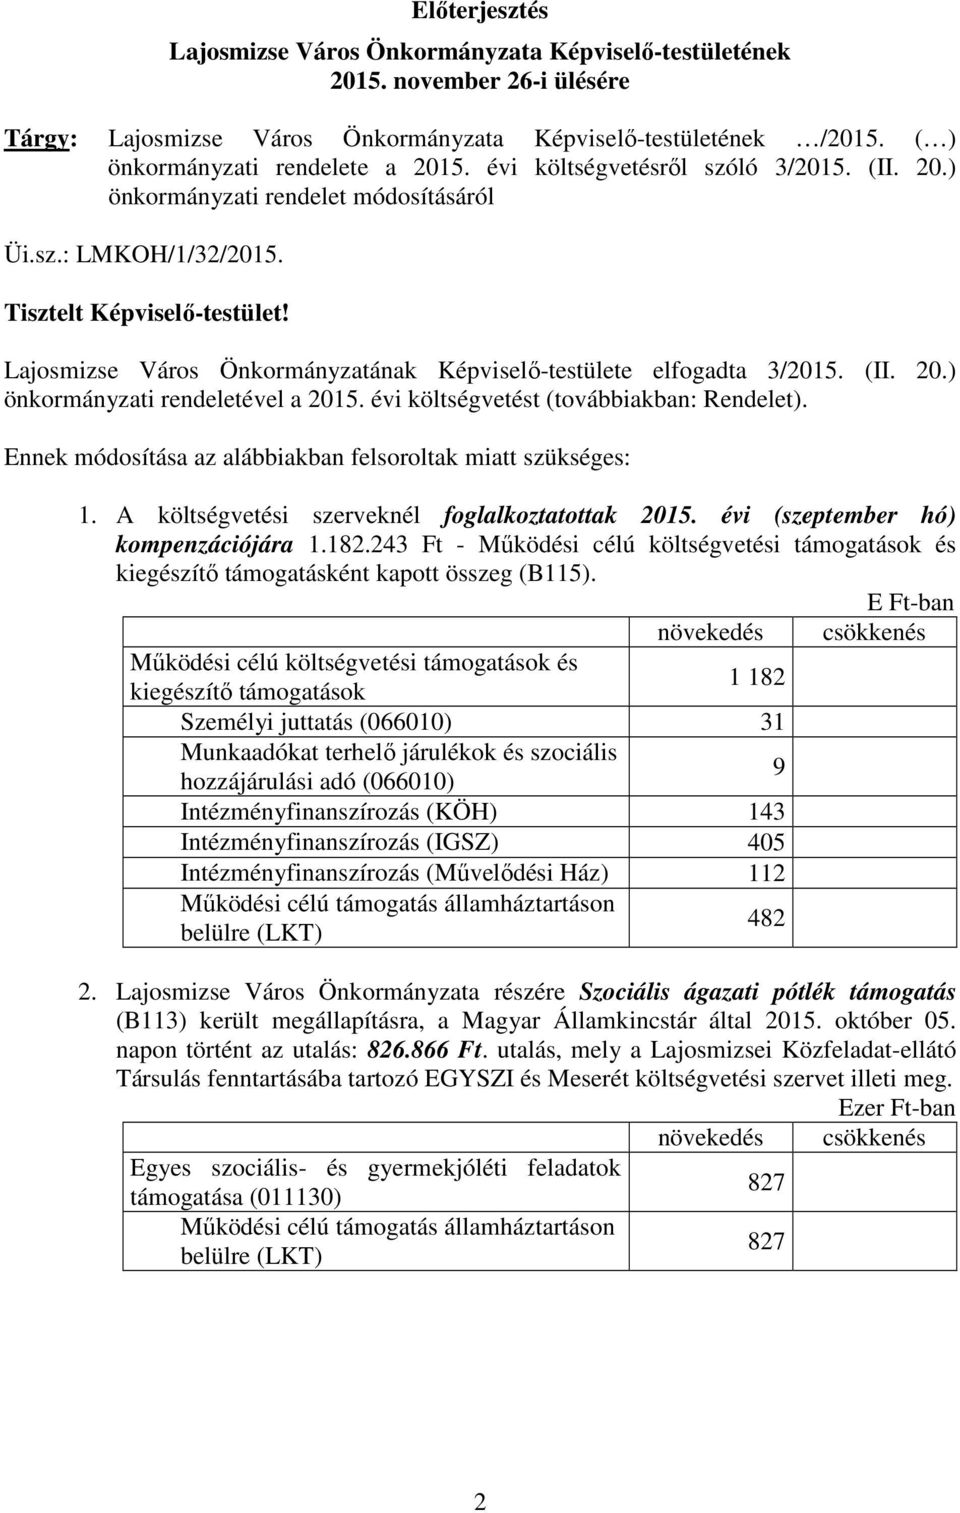 Lajosmizse Város Önkormányzatának Képviselı-testülete elfogadta 3/2015. (II. 20.) önkormányzati rendeletével a 2015. évi költségvetést (továbbiakban: Rendelet).